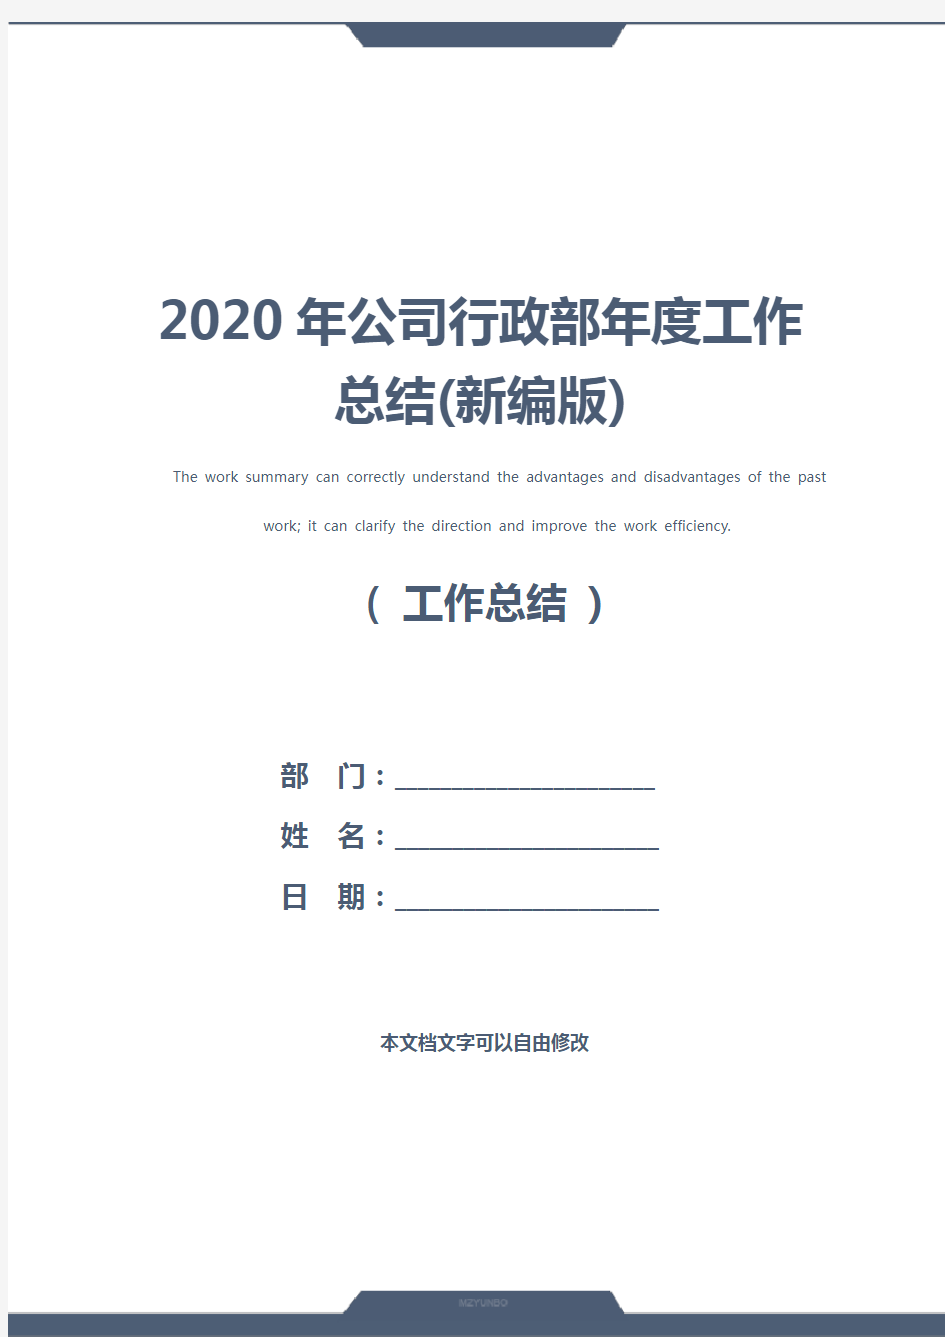 2020年公司行政部年度工作总结(新编版)